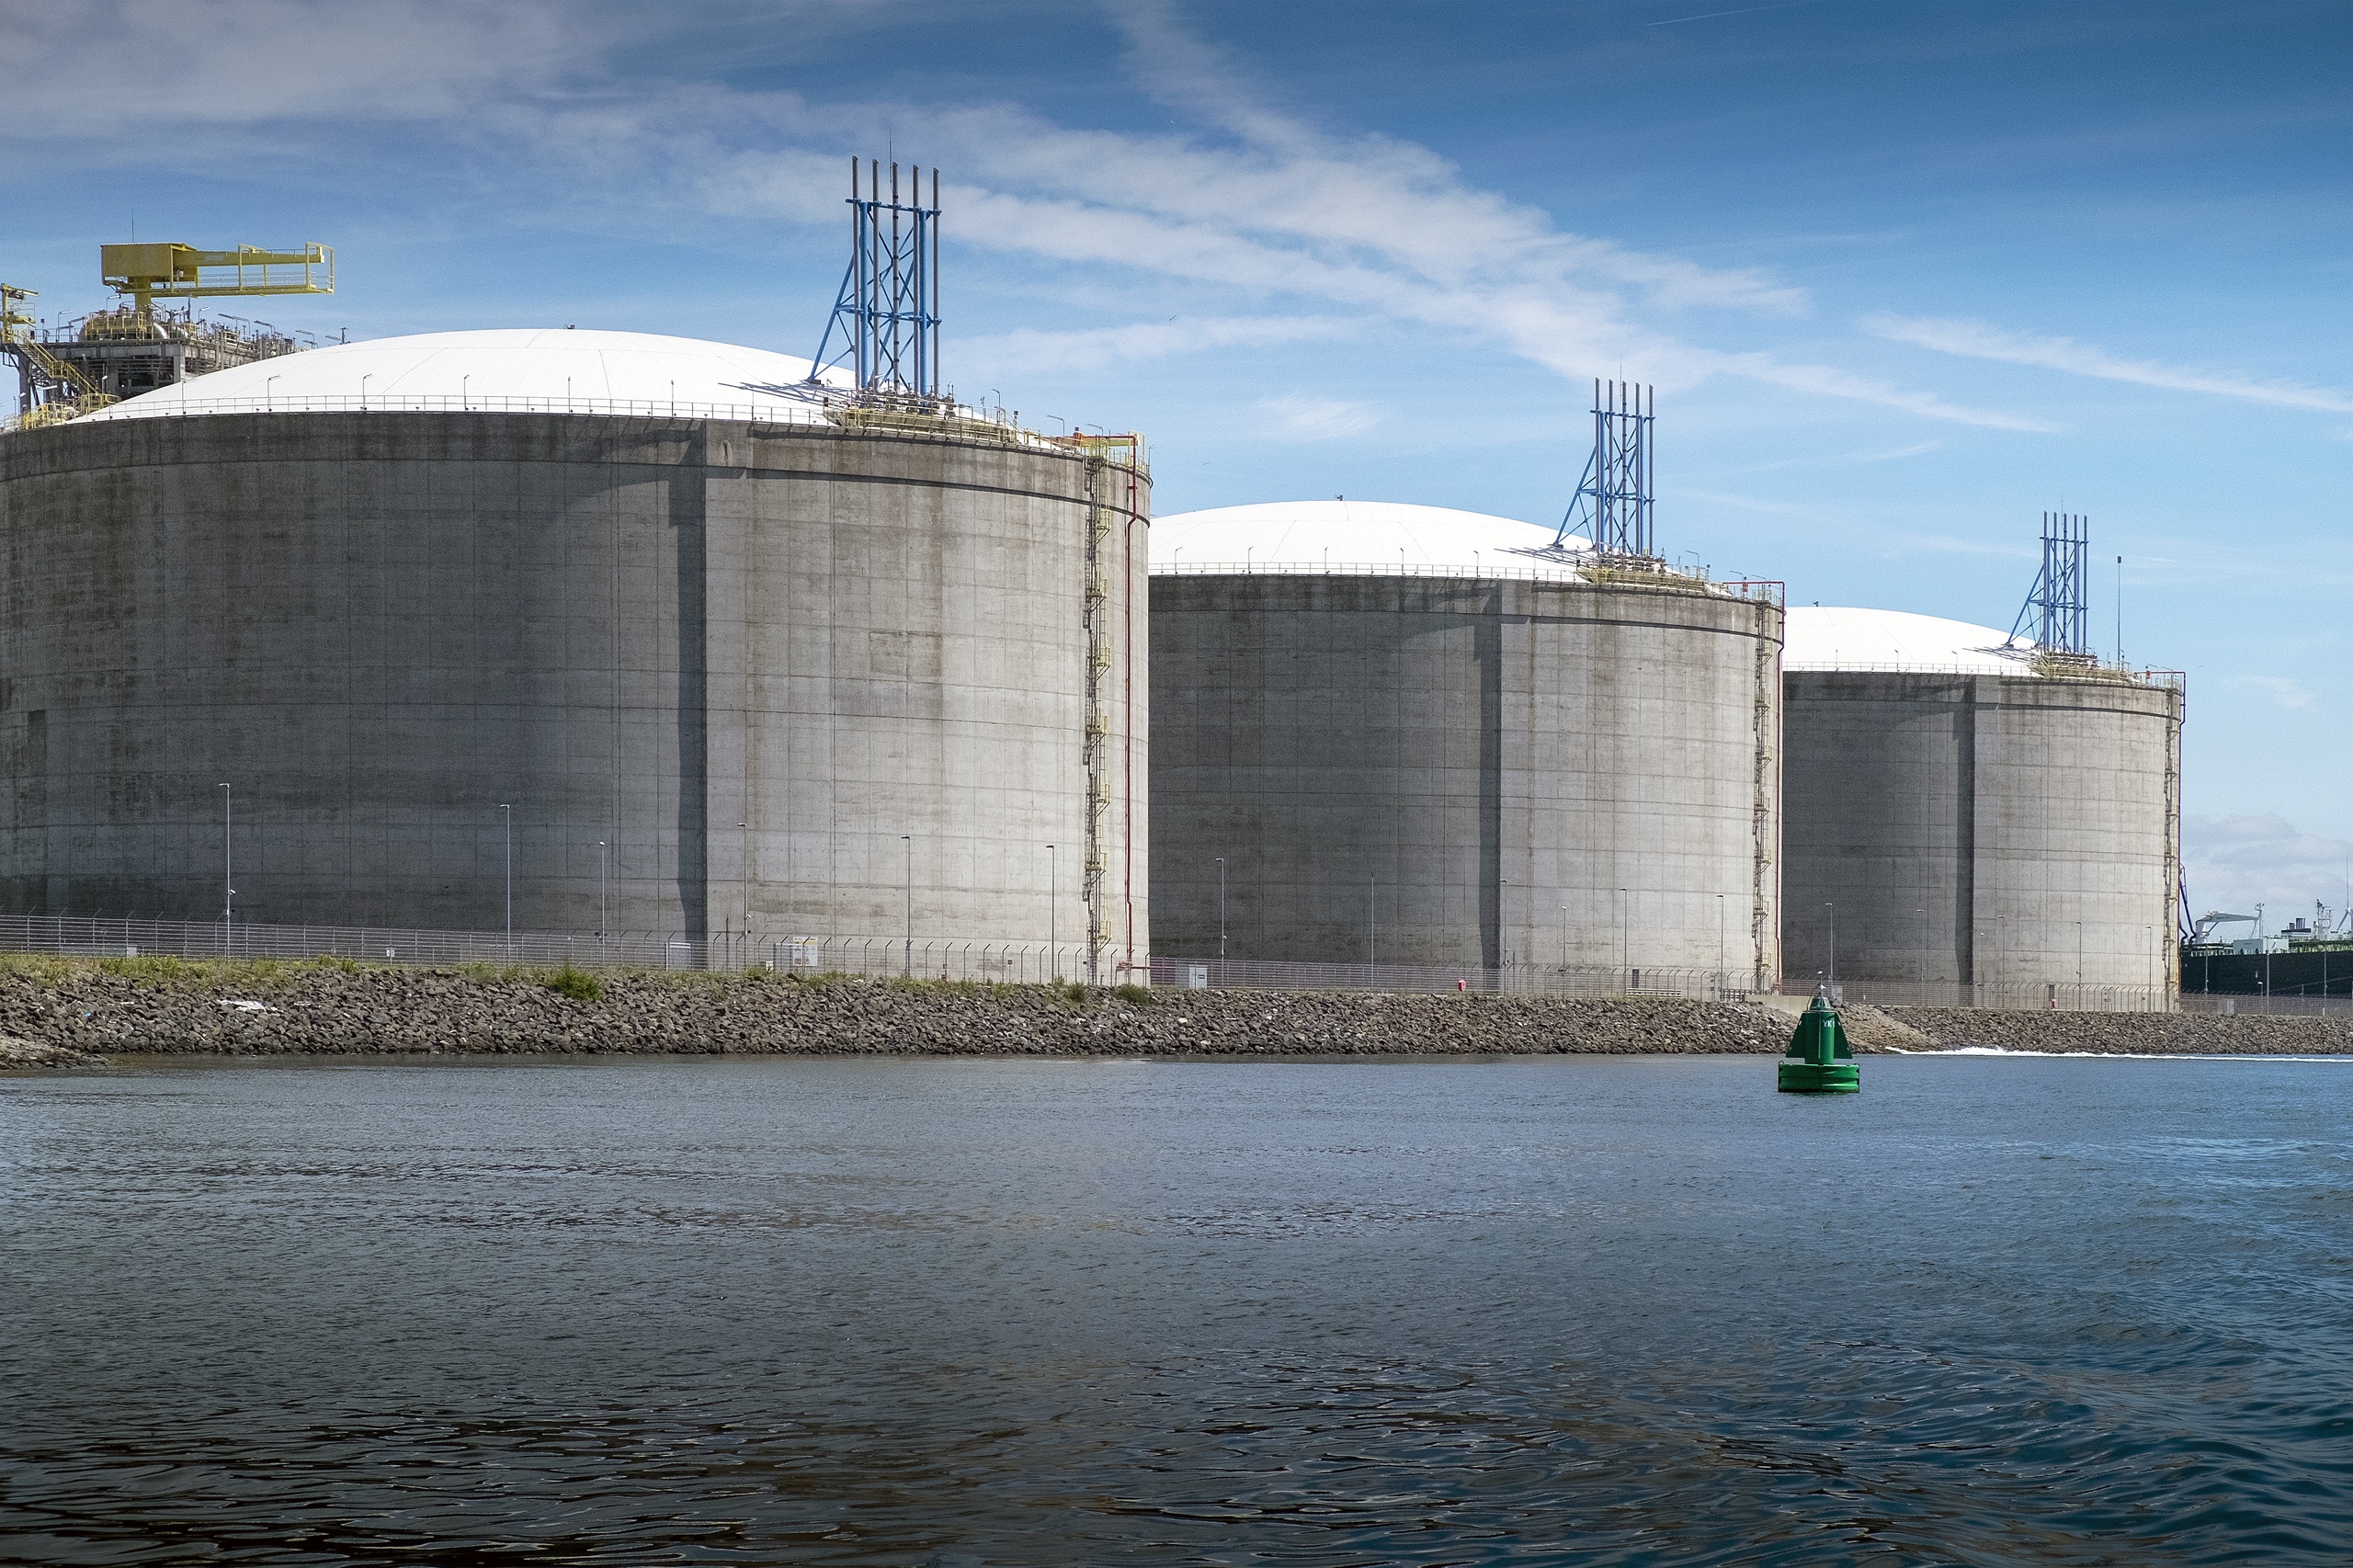 LNG-importterminal in Rotterdam van de Gasunie en Vopak op de Maasvlakte nabij de haveningang. Drie opslagtanks met elk een opslagcapaciteit van 180.000 m3 maken het mogelijk om grote hoeveelheden LNG of vloeibaar gas in één keer te lossen. 